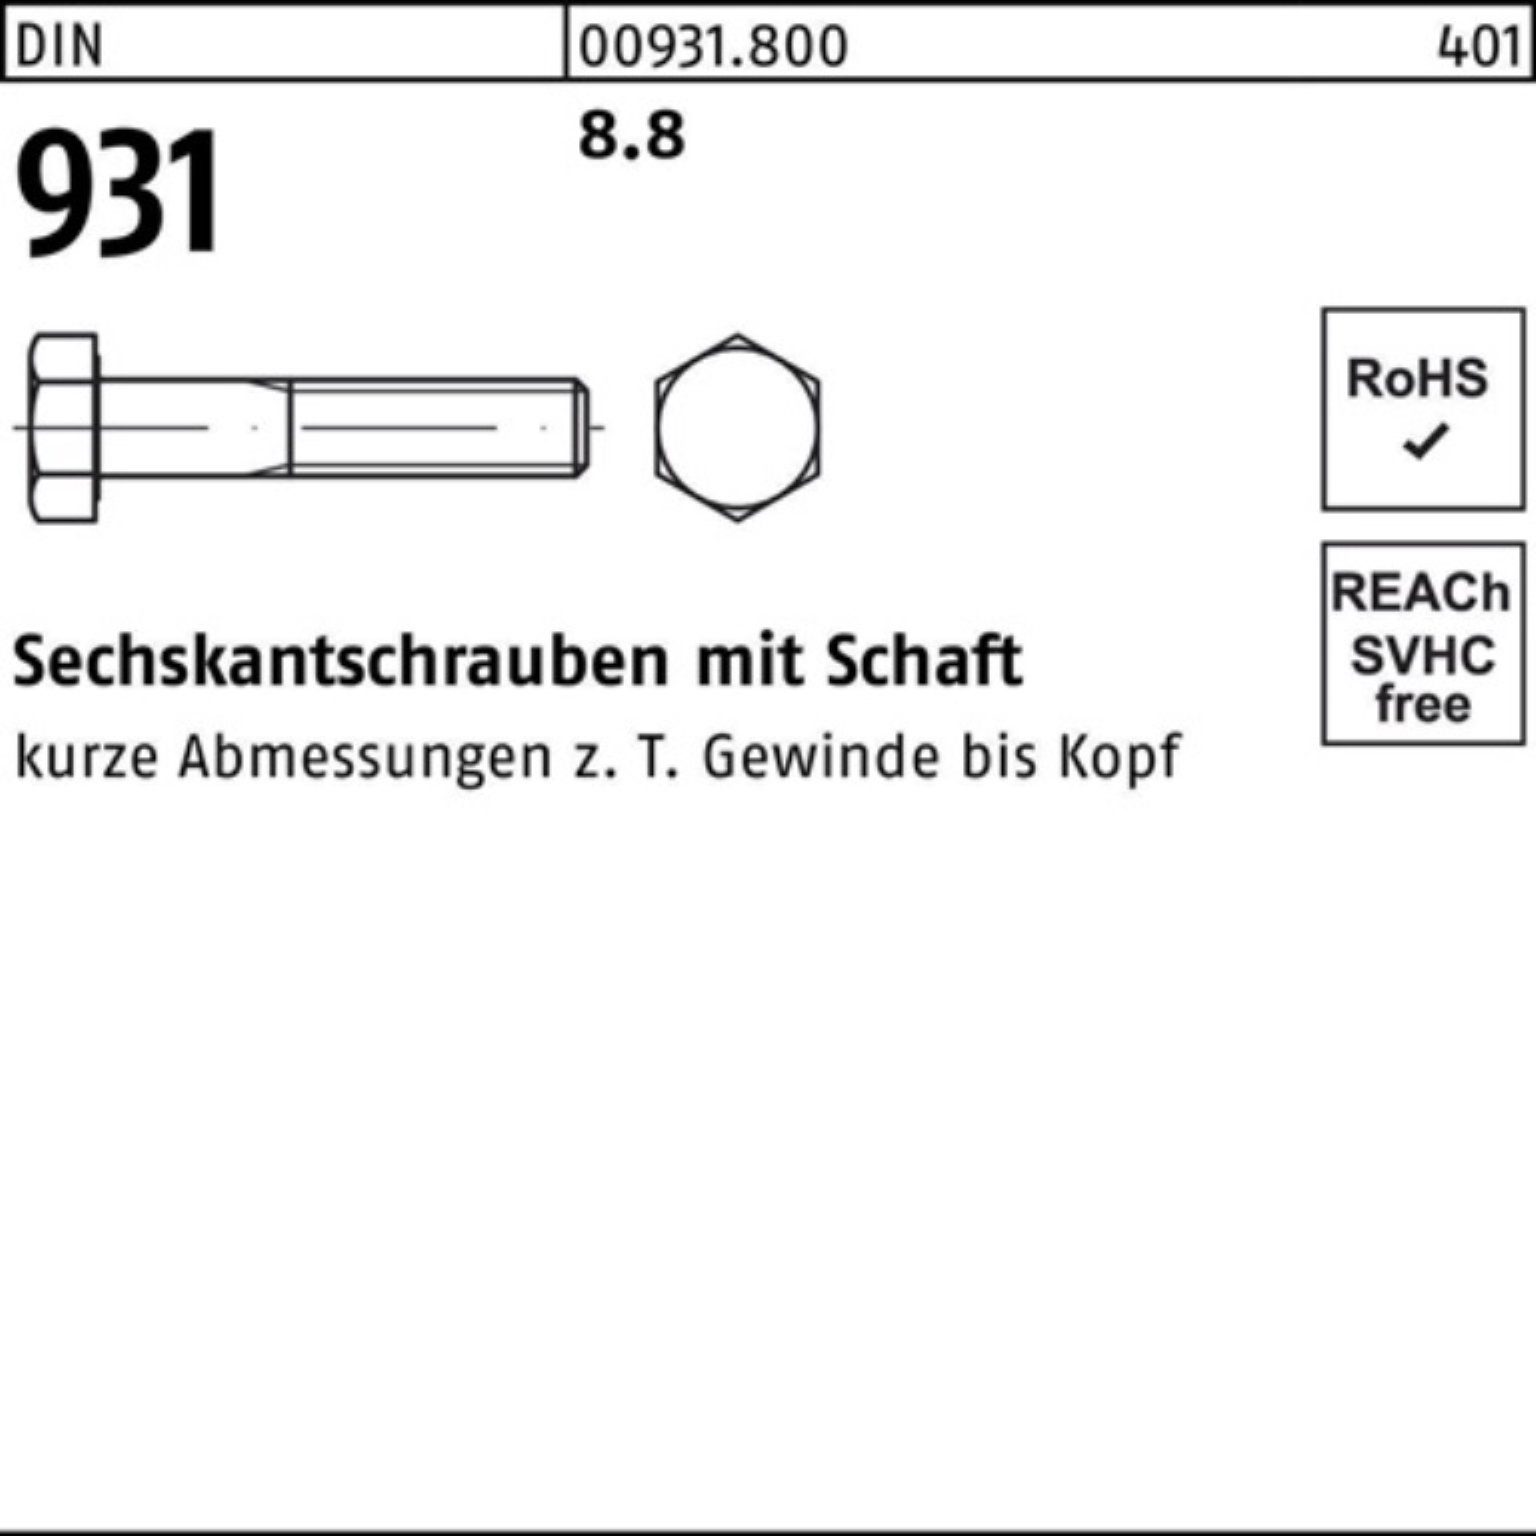 1 DIN Sechskantschraube 931 Schaft Stück 8.8 DIN Sechskantschraube Reyher Pack 170 100er M45x